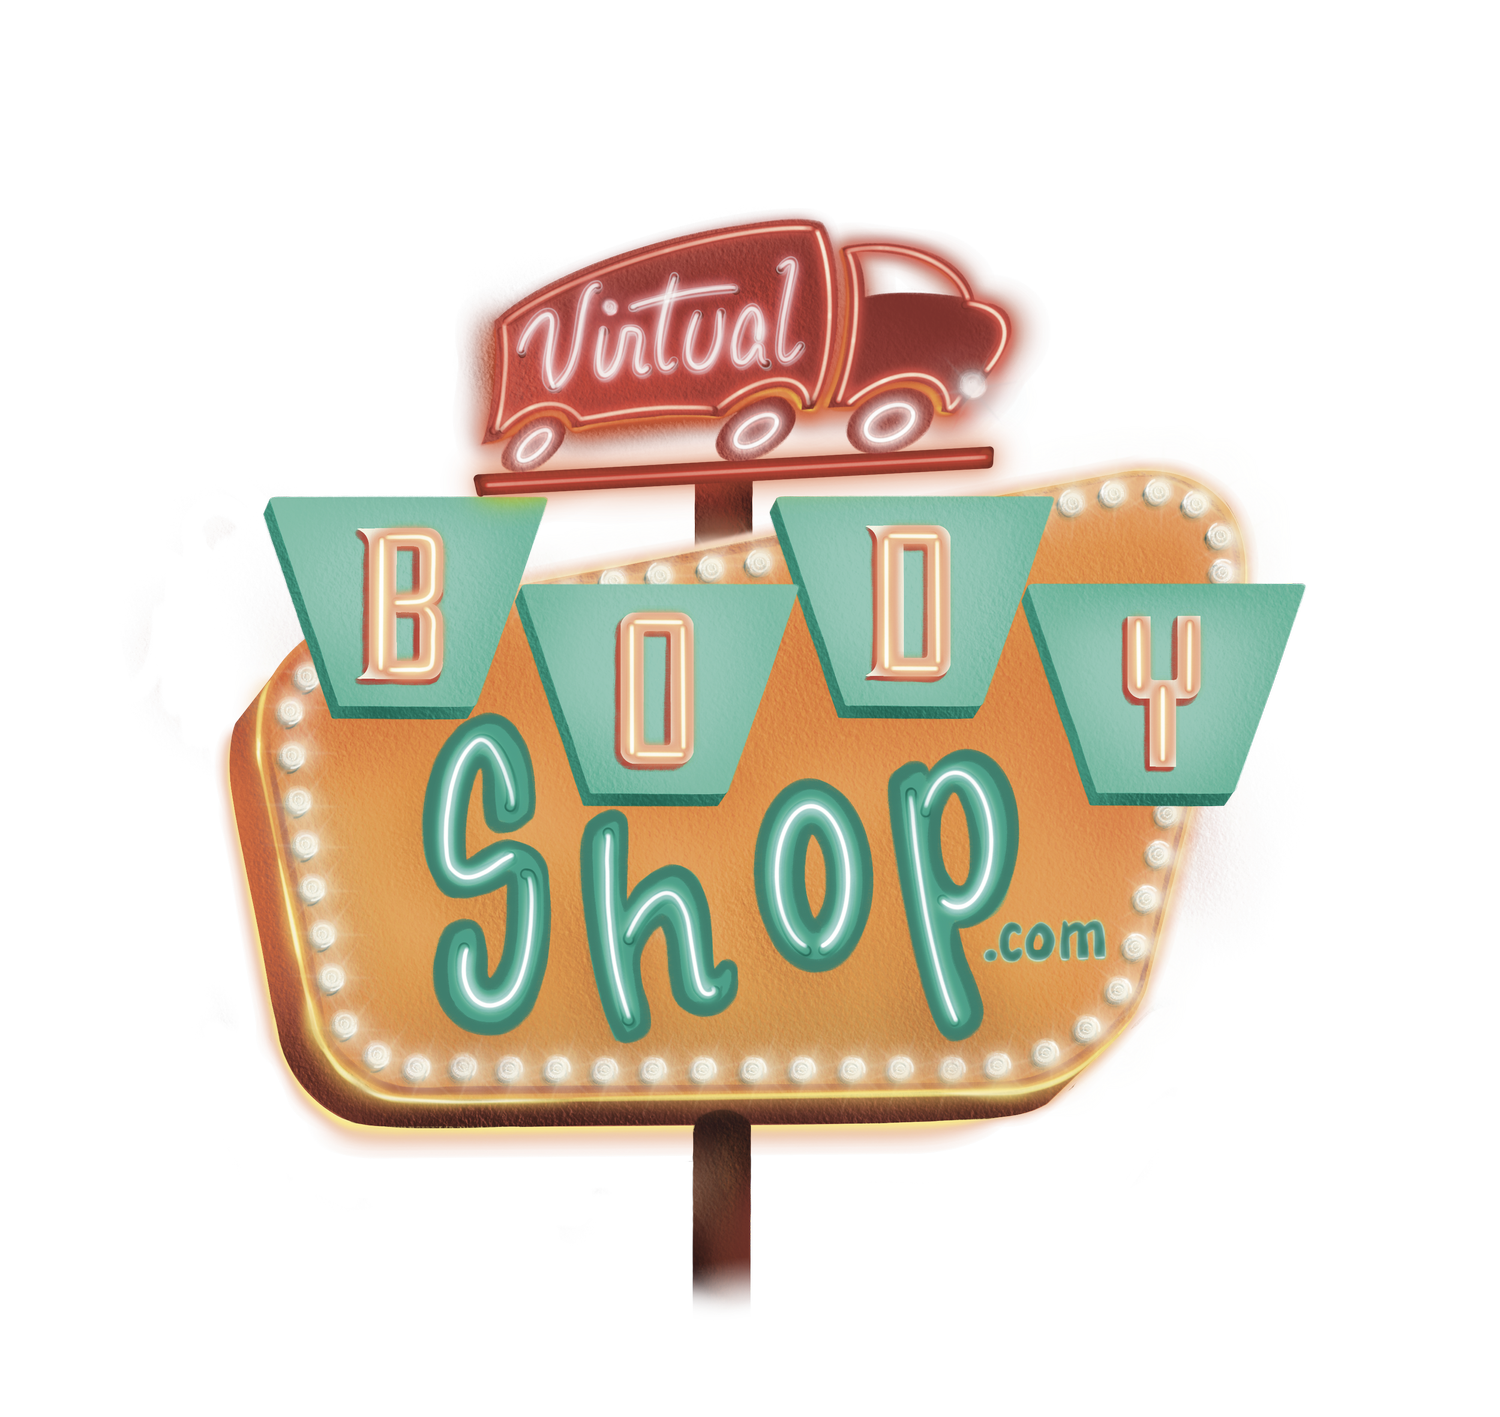 Virtual Body Shop